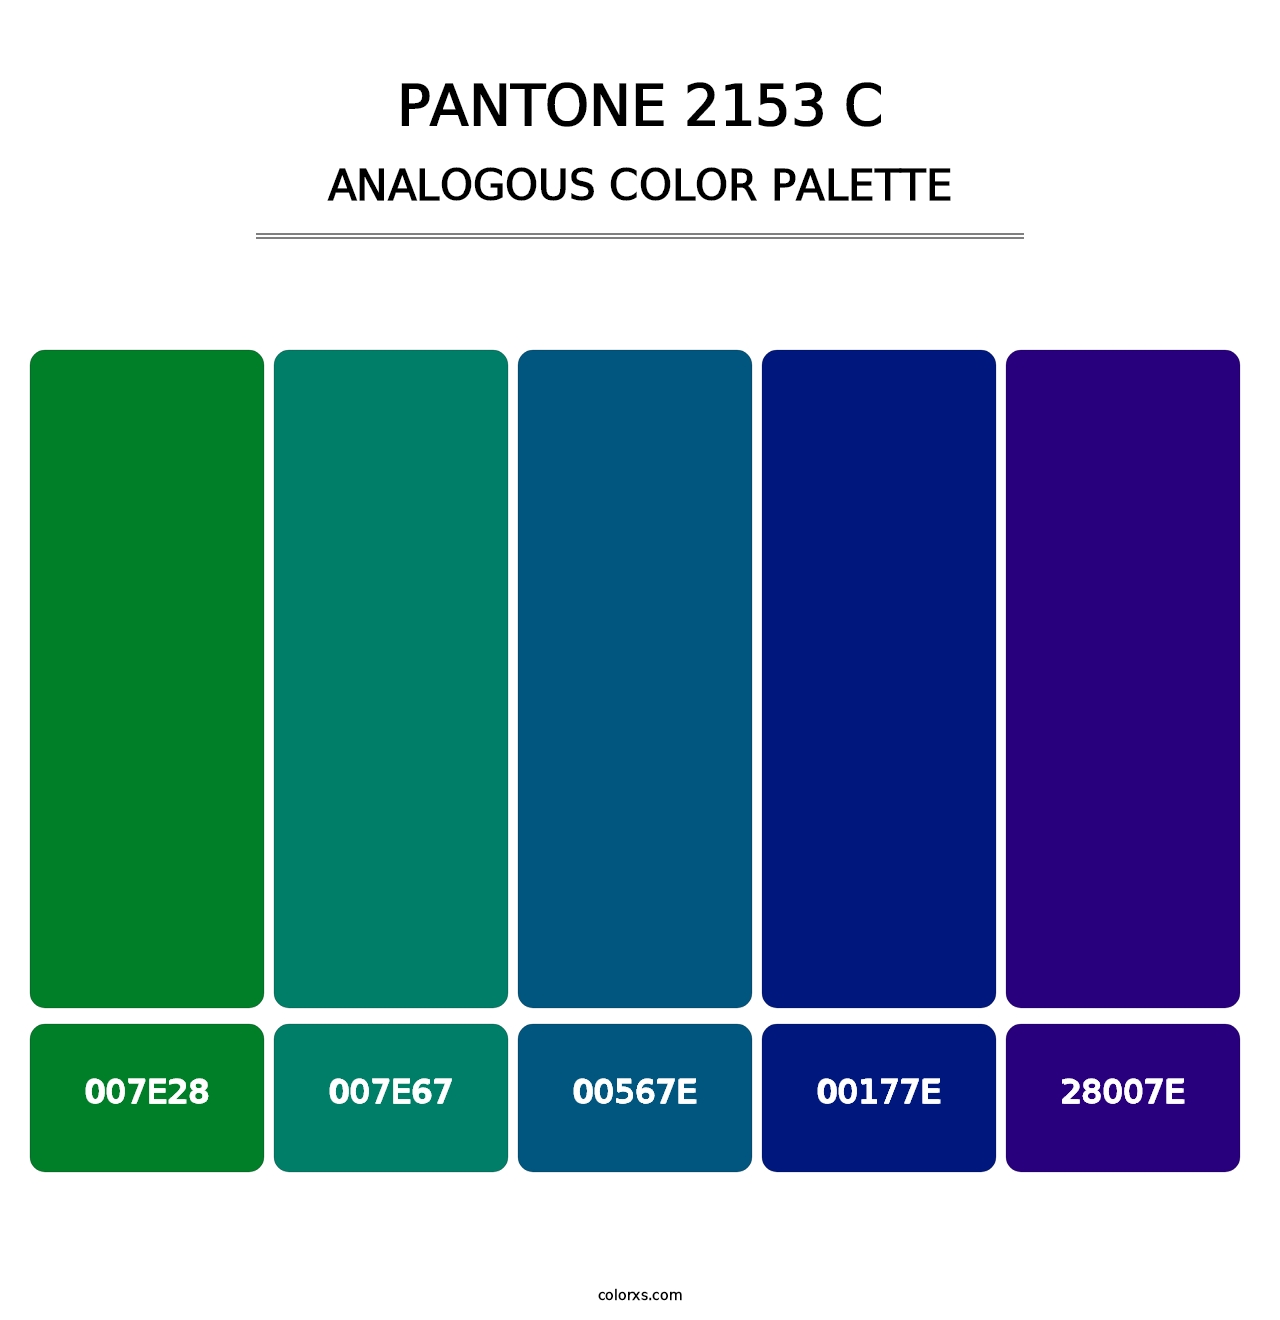 PANTONE 2153 C - Analogous Color Palette